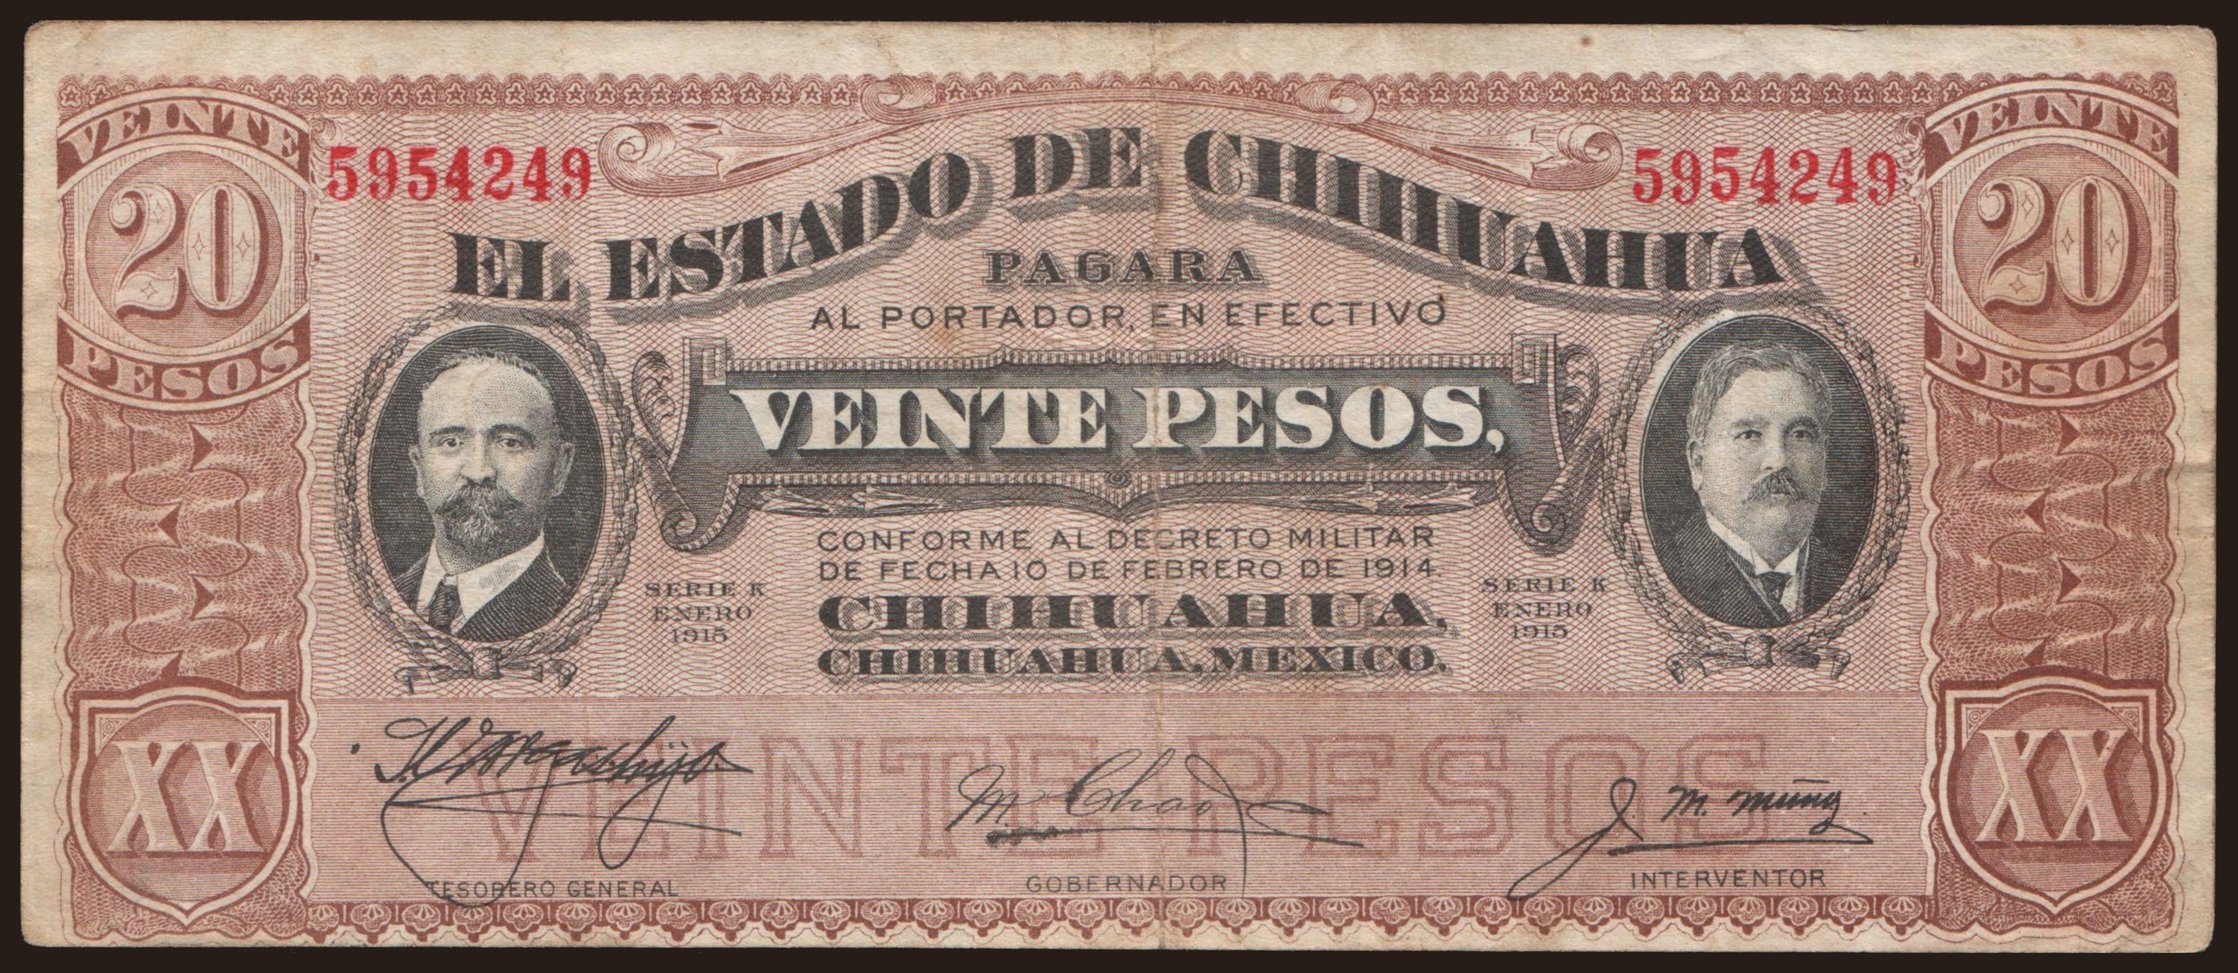 El Estado de Chihuahua, 20 pesos, 1915